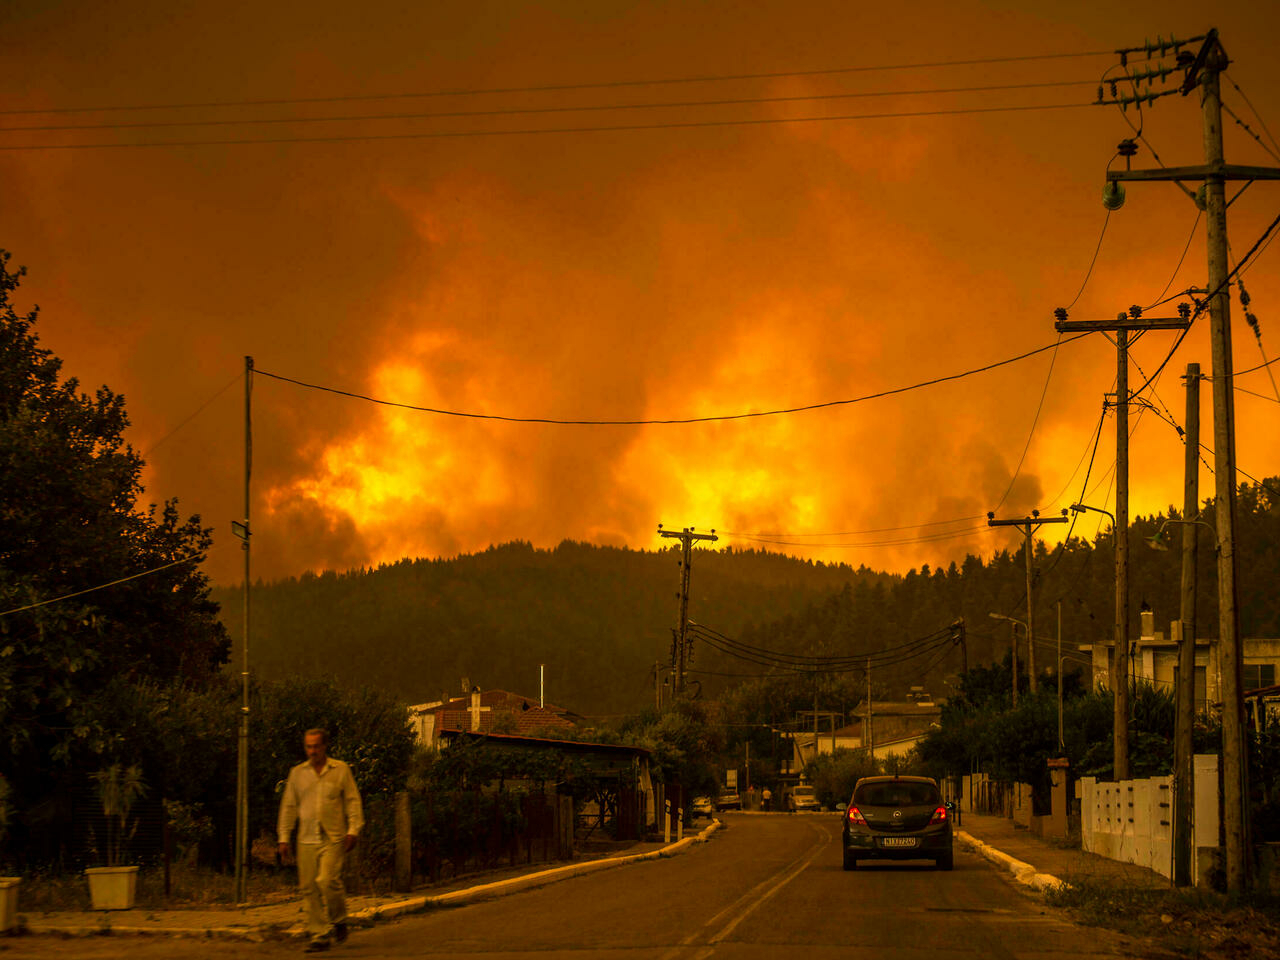 Hundreds flee, homes destroyed as forest fires ravage Greek island